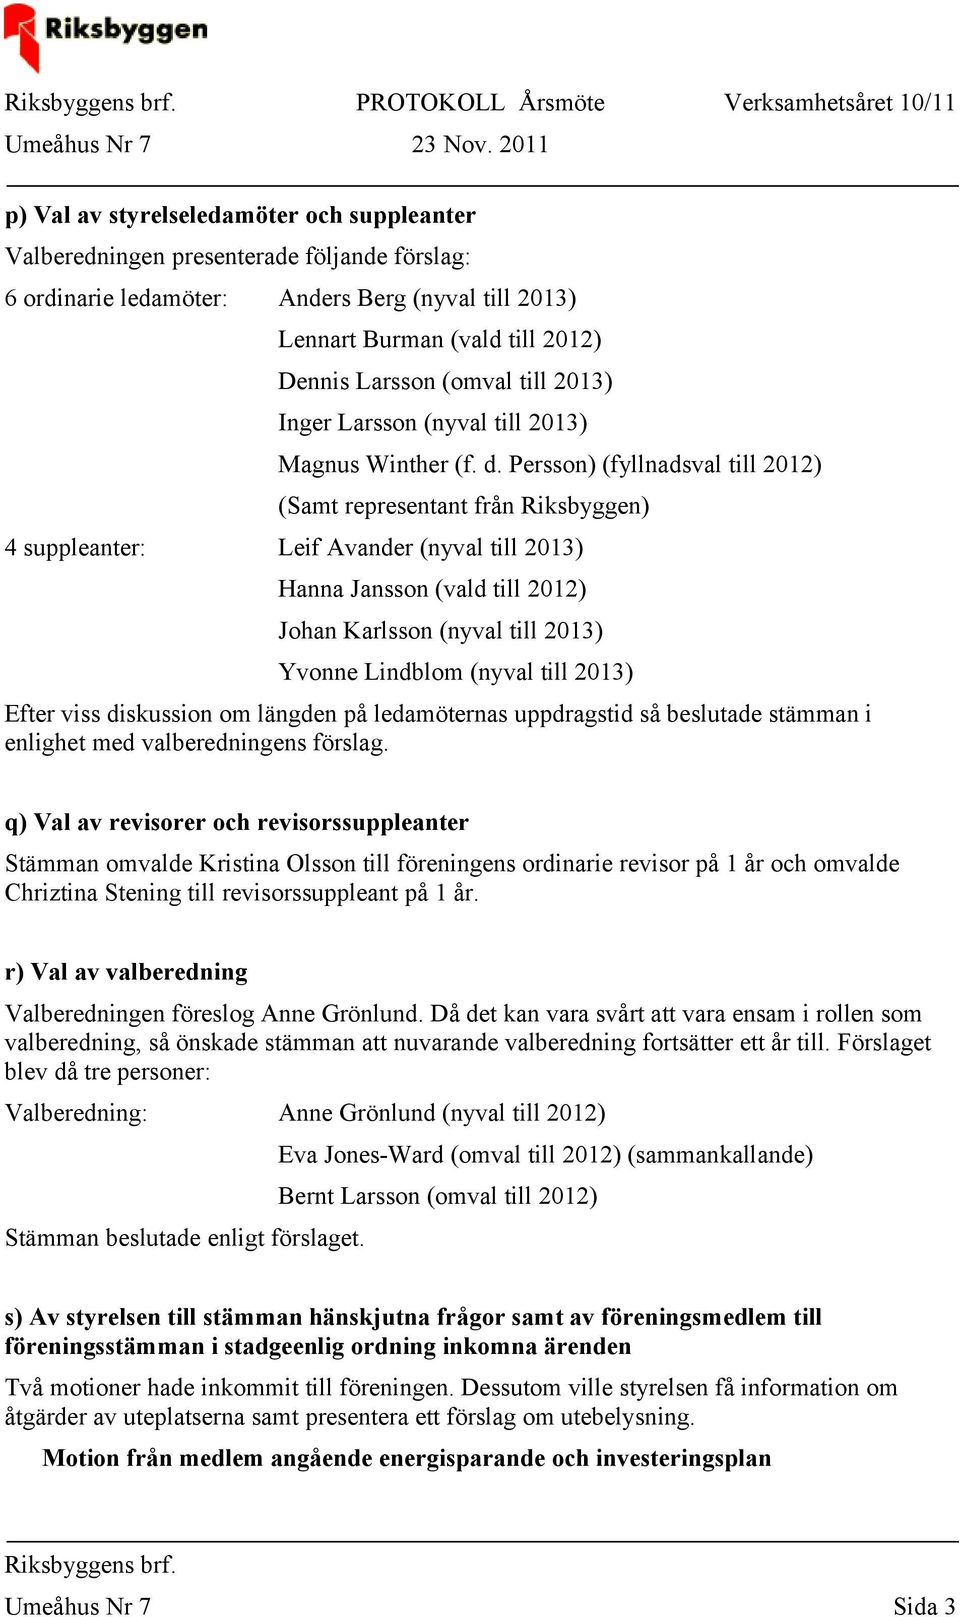 Persson) (fyllnadsval till 2012) (Samt representant från Riksbyggen) 4 suppleanter: Leif Avander (nyval till 2013) Hanna Jansson (vald till 2012) Johan Karlsson (nyval till 2013) Yvonne Lindblom